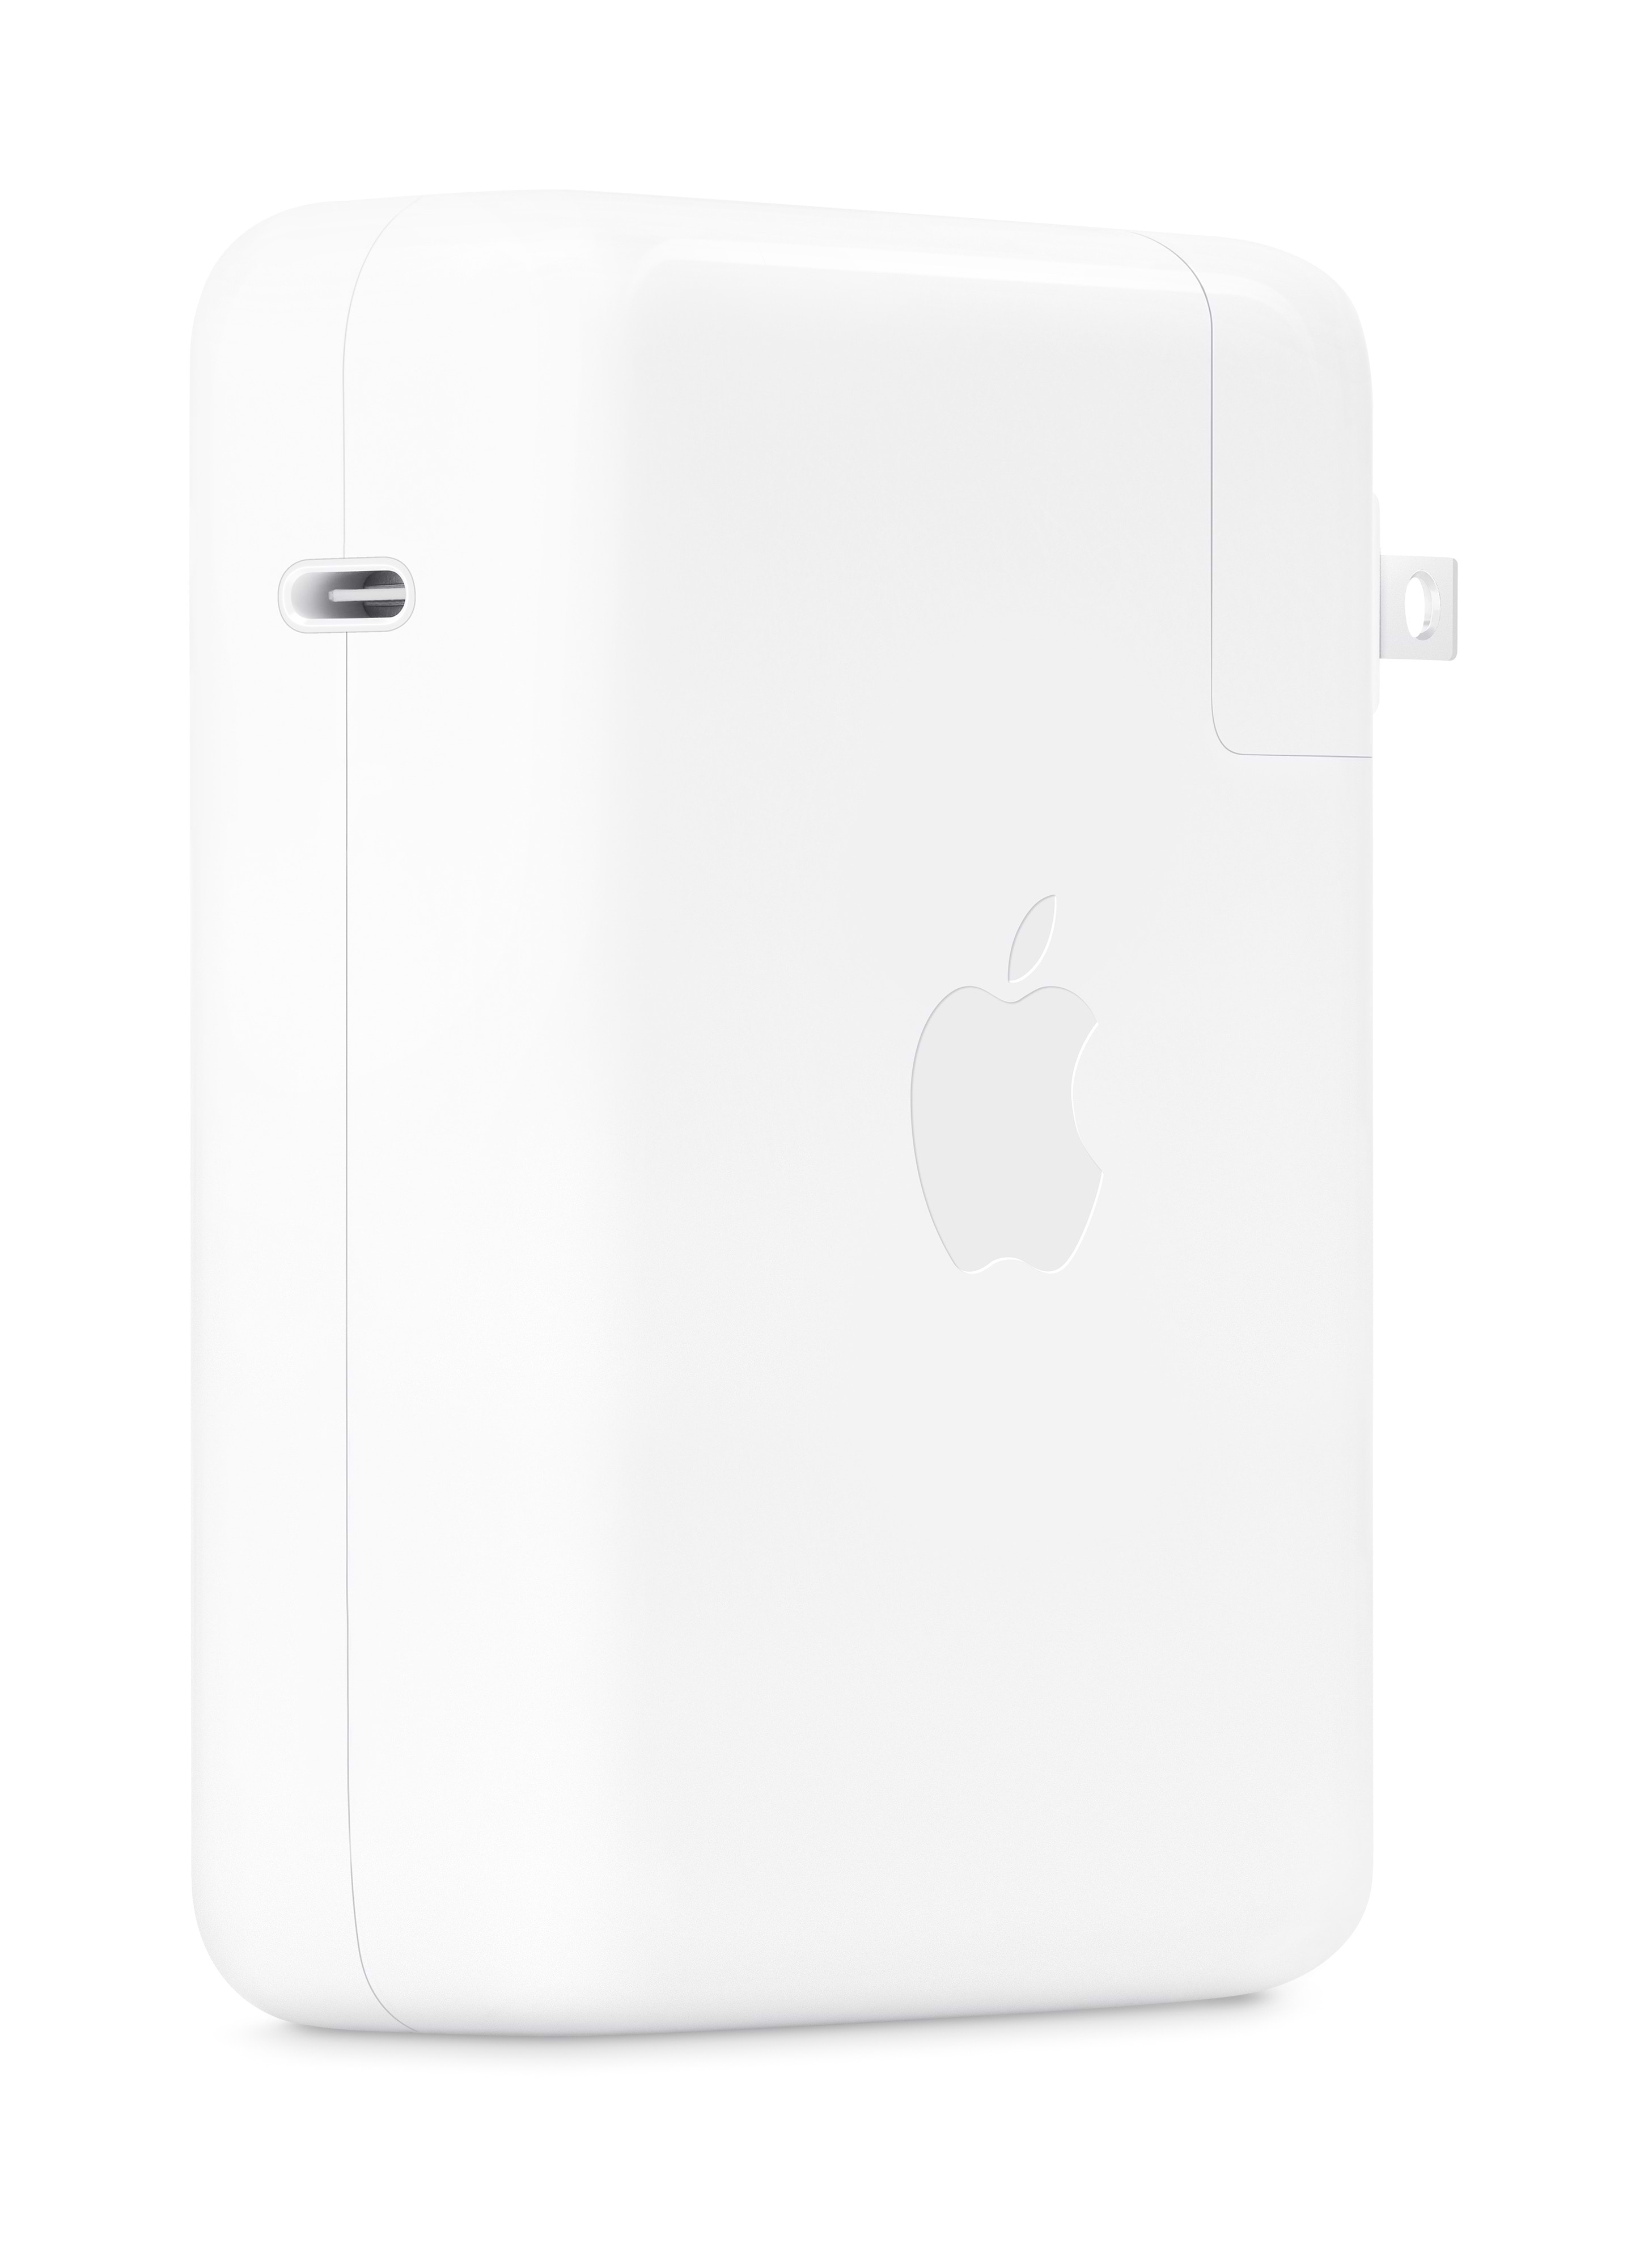 מטען קיר עוצמתי - Apple 140W USB-C Power Adapter - צבע לבן שנה אחריות ע